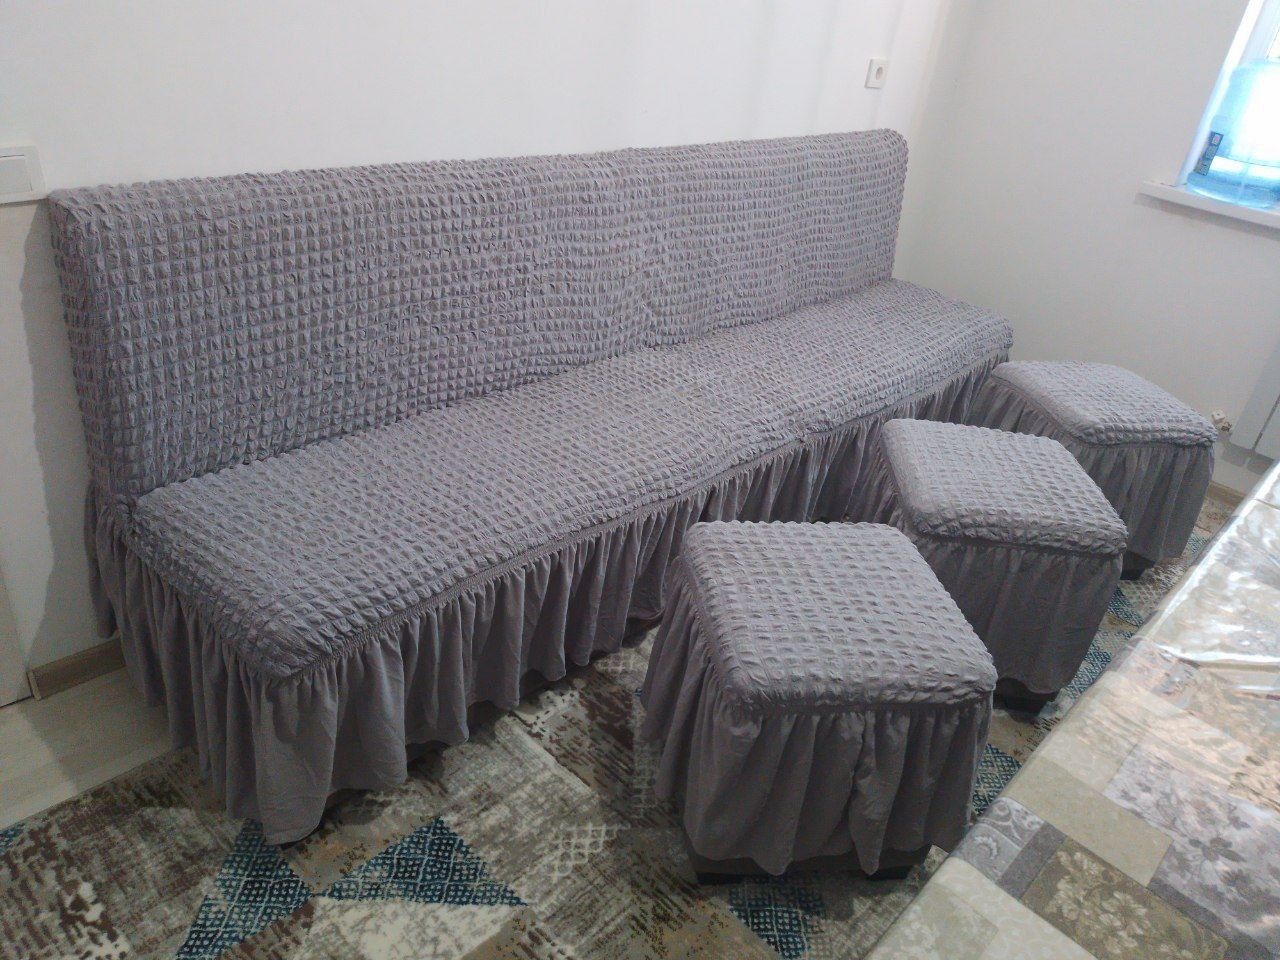 Кухонная мебель стол и диван в идеальном состоянии
Стол 250х70см
Диван